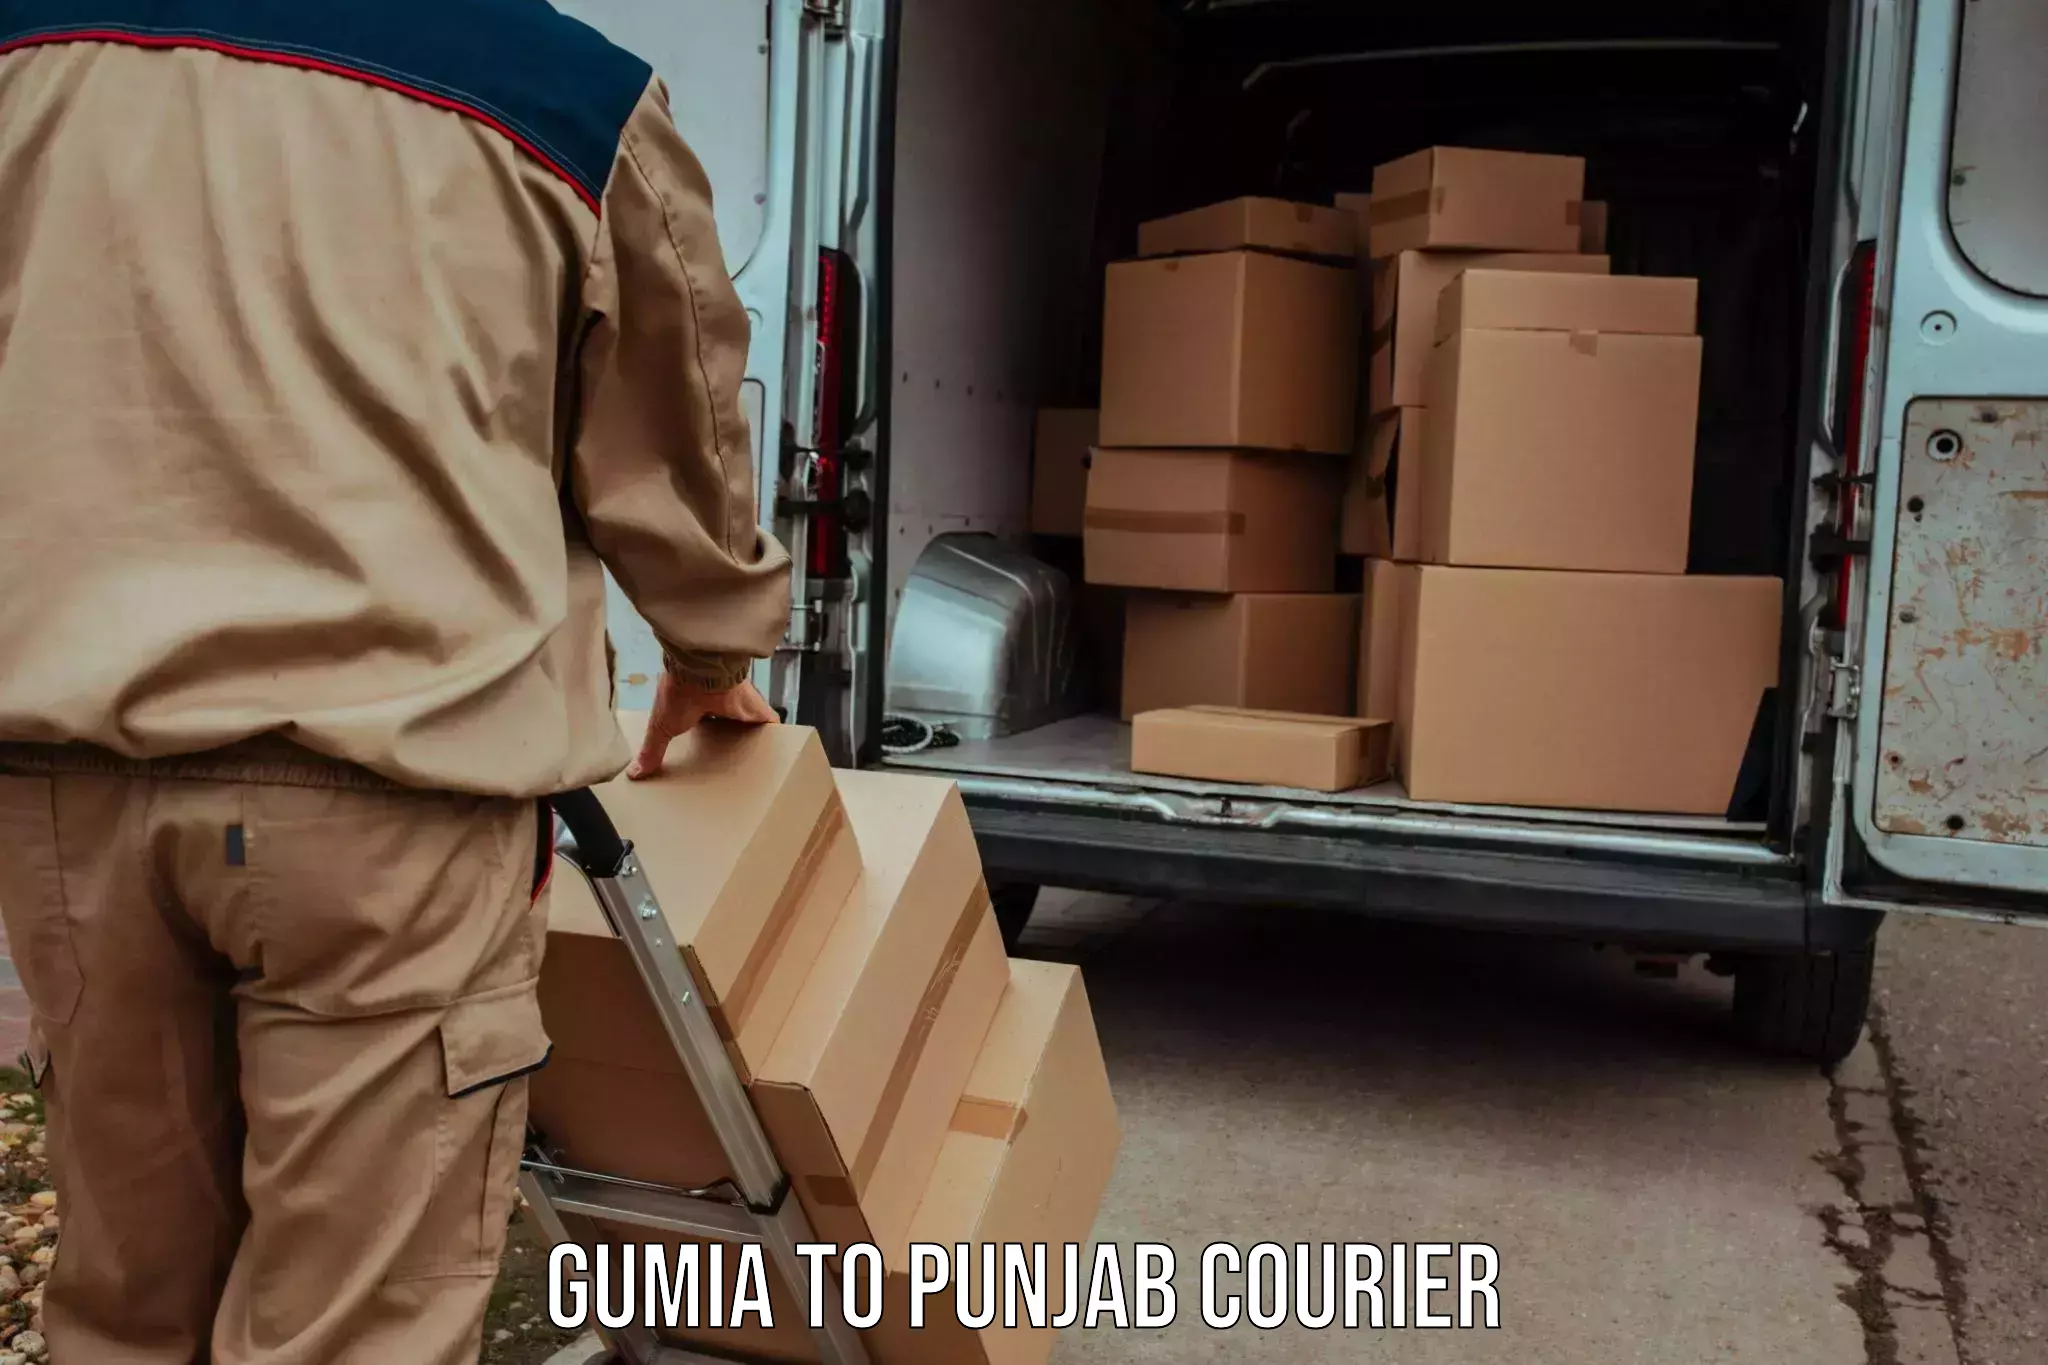 Courier services Gumia to Kotkapura